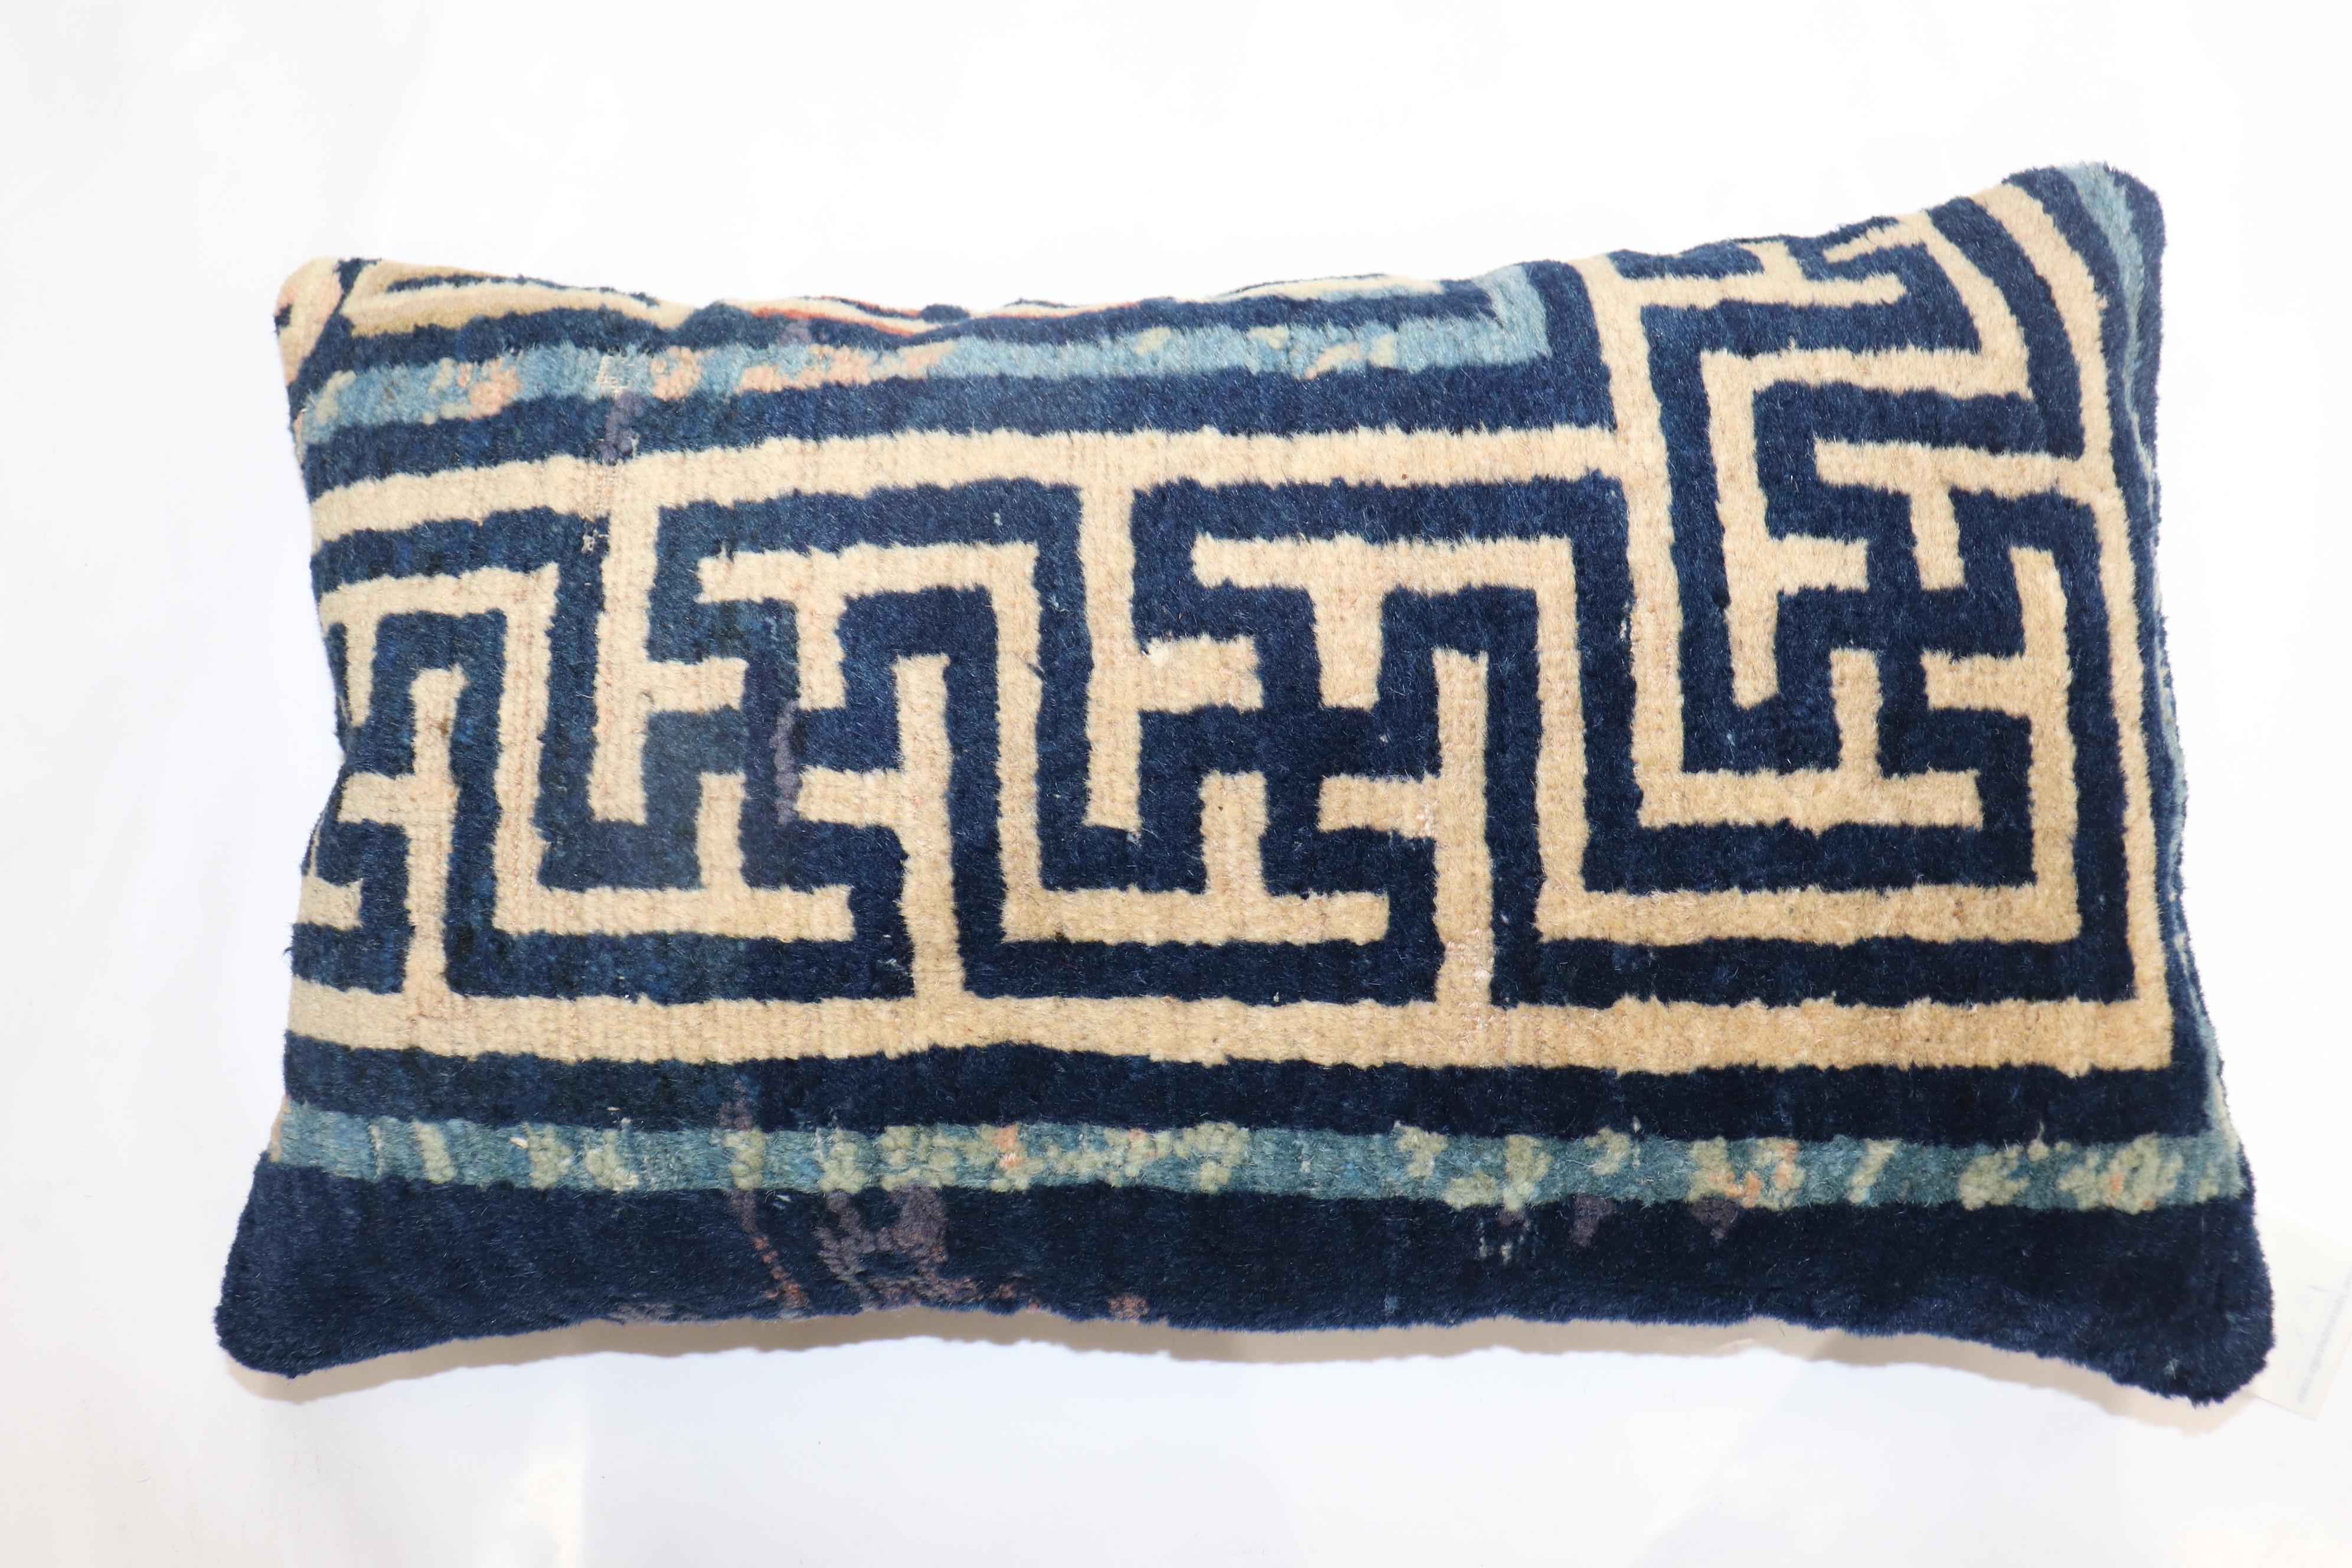 Kissen aus einem chinesischen Teppich aus dem 20. Jahrhundert mit Reißverschluss und Poly-Füllung.

Maße: 14'' x 24''.